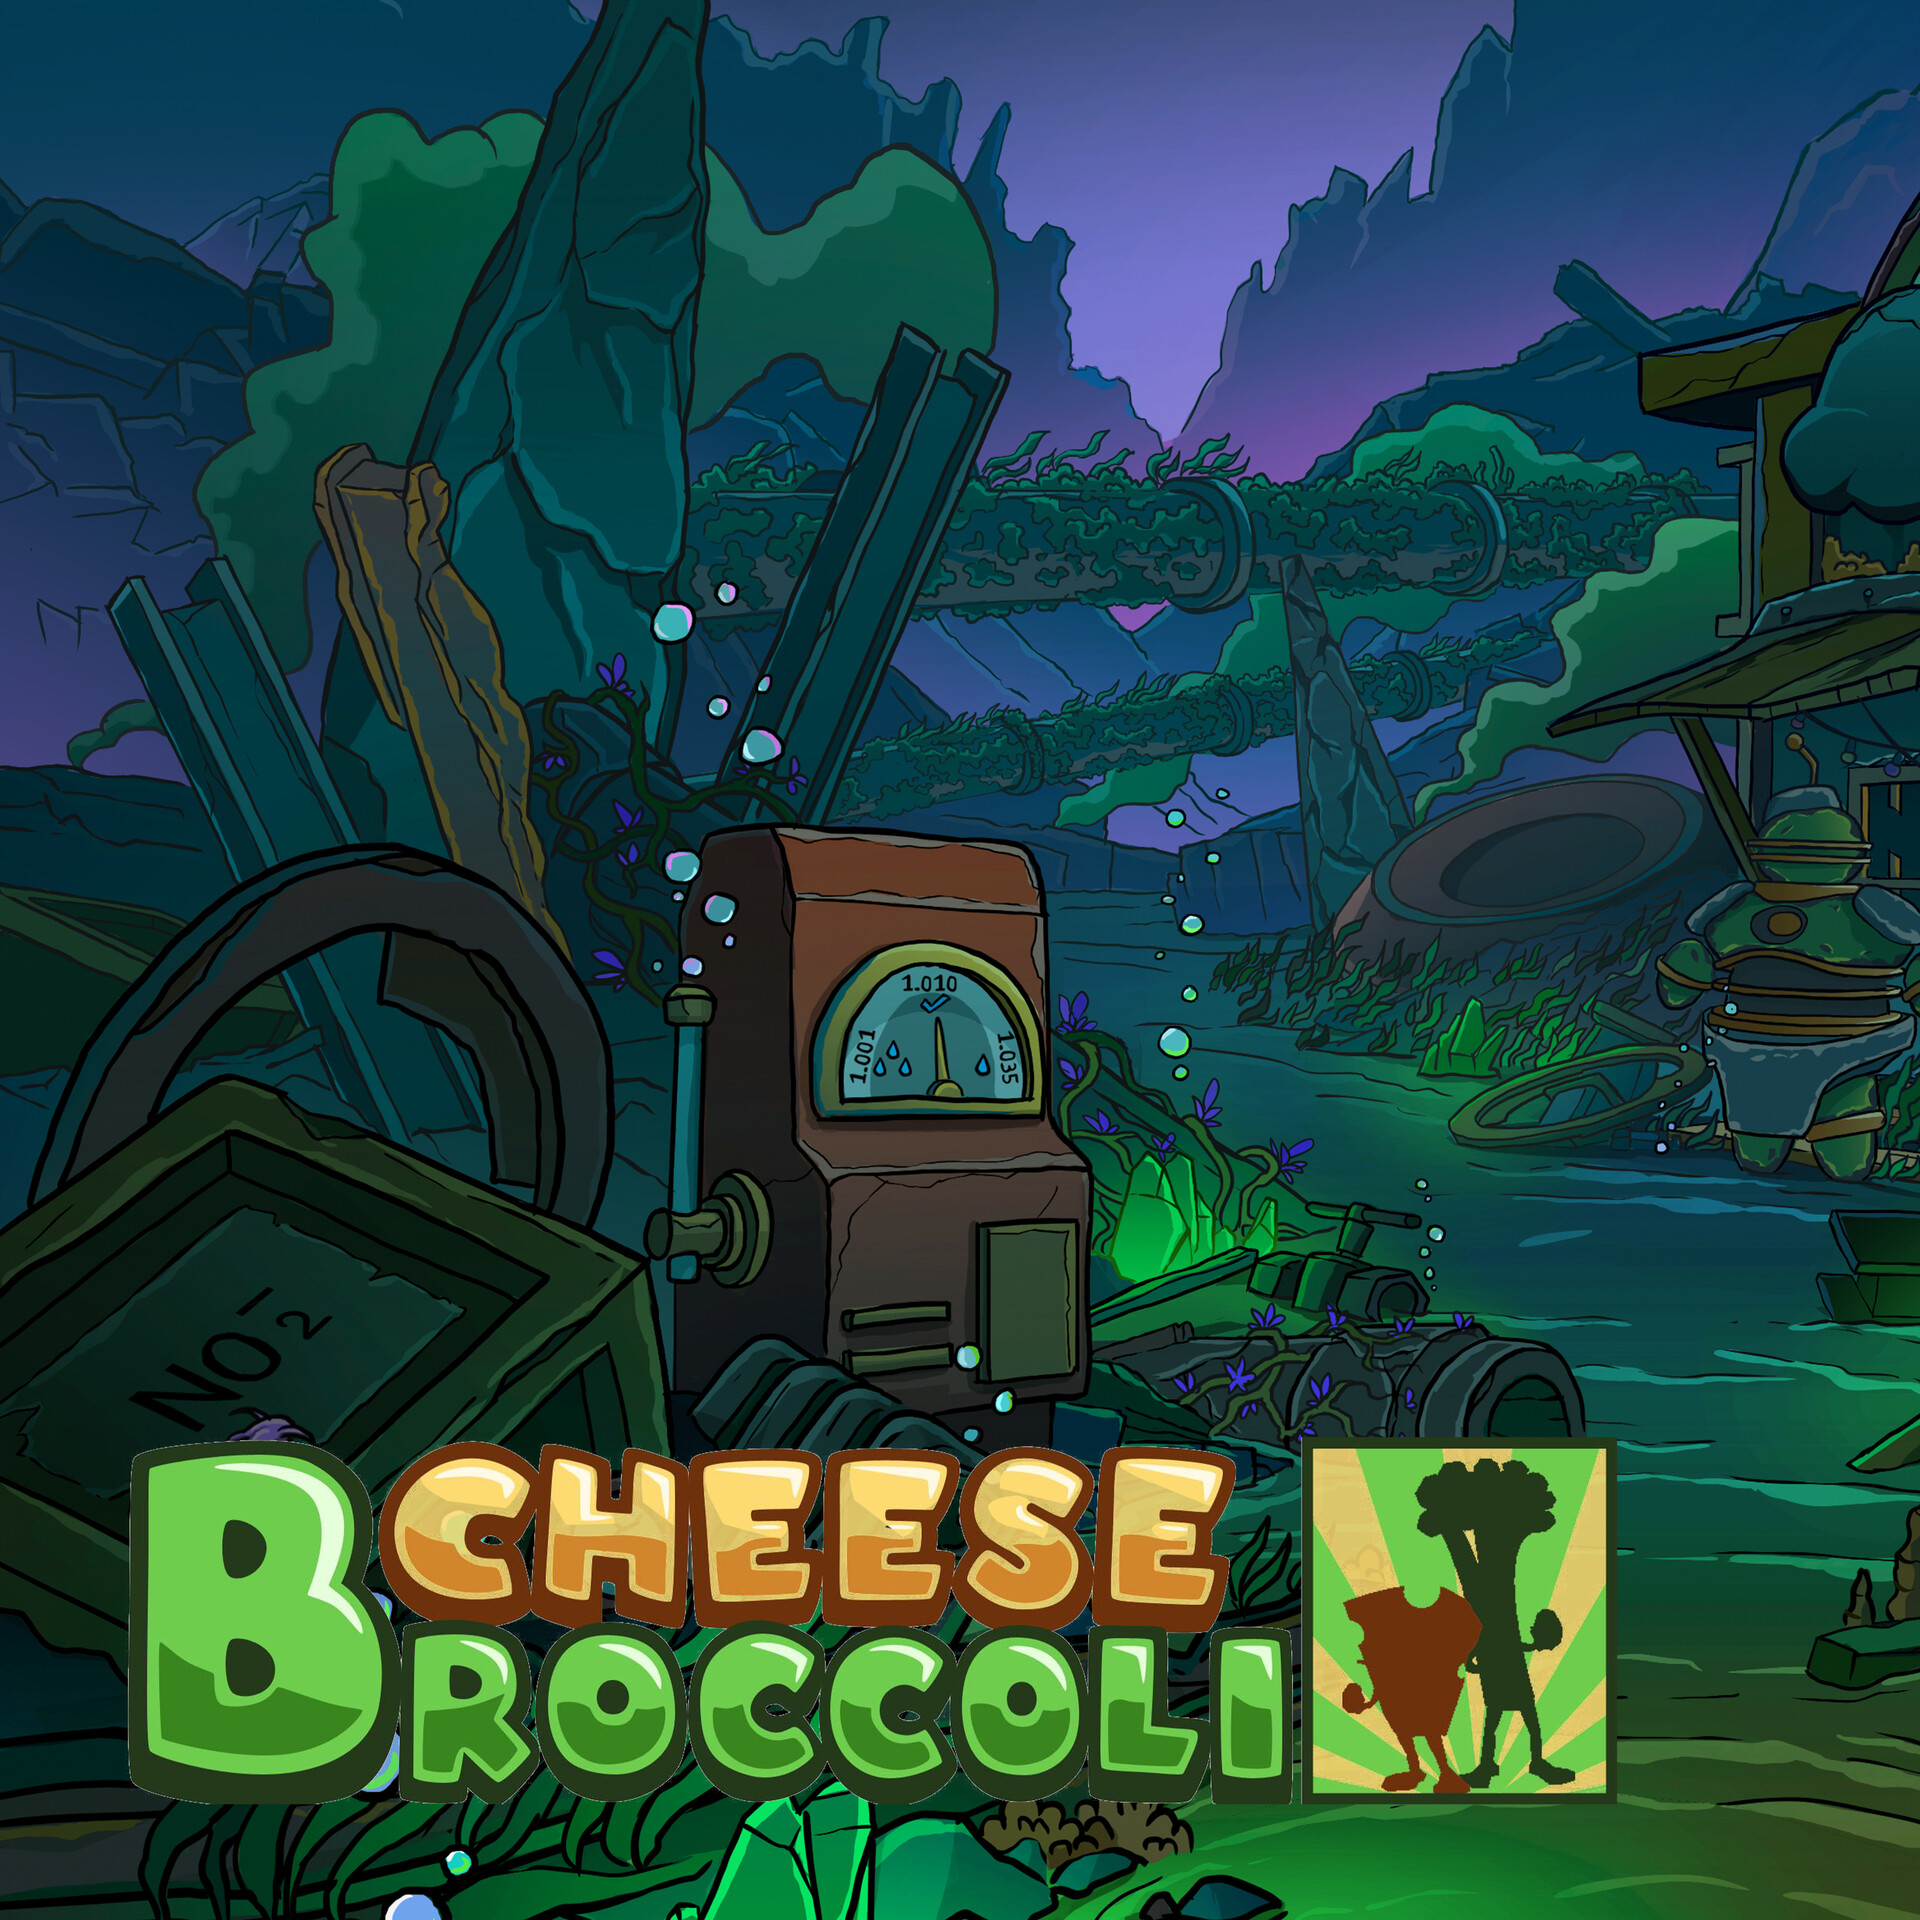 Cheese Broccoli Studio - Underwater Junkyard